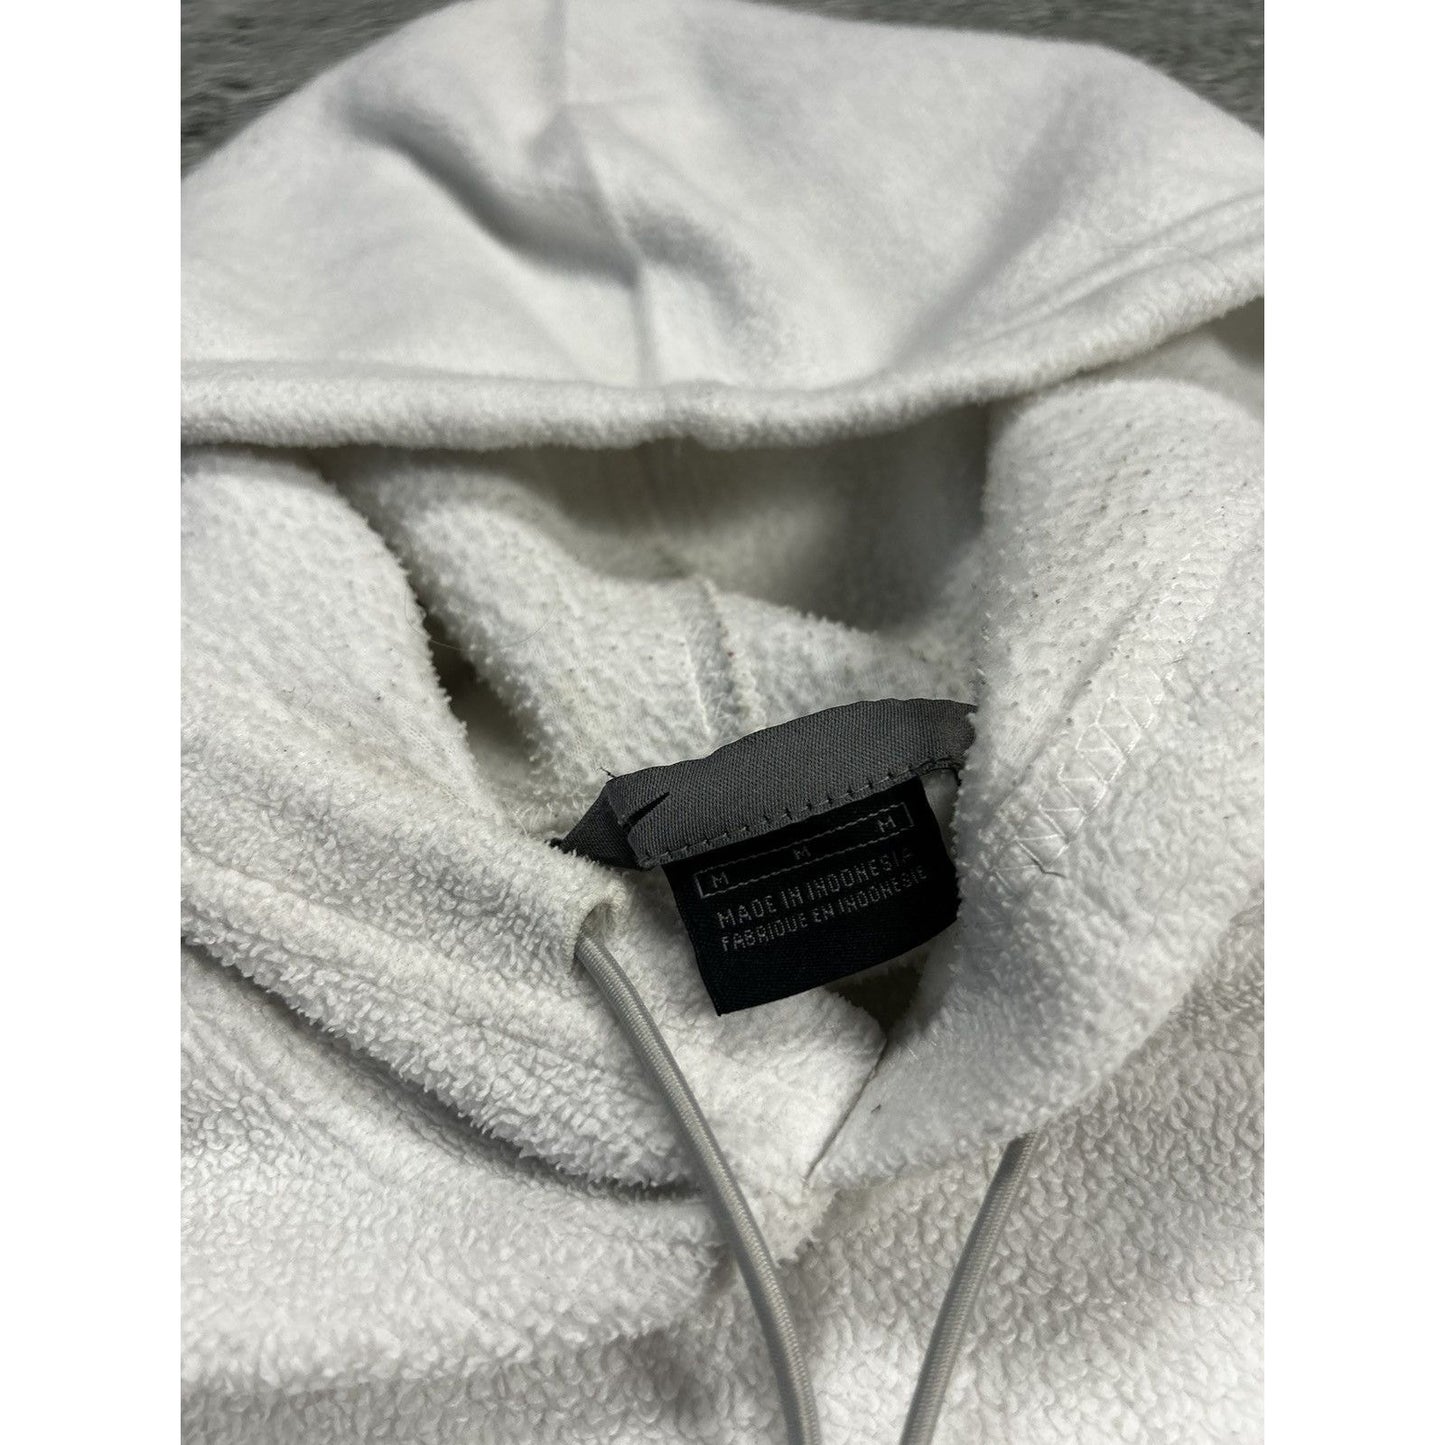 Nike fleece hoodie white sherpa vintage sweatshirt